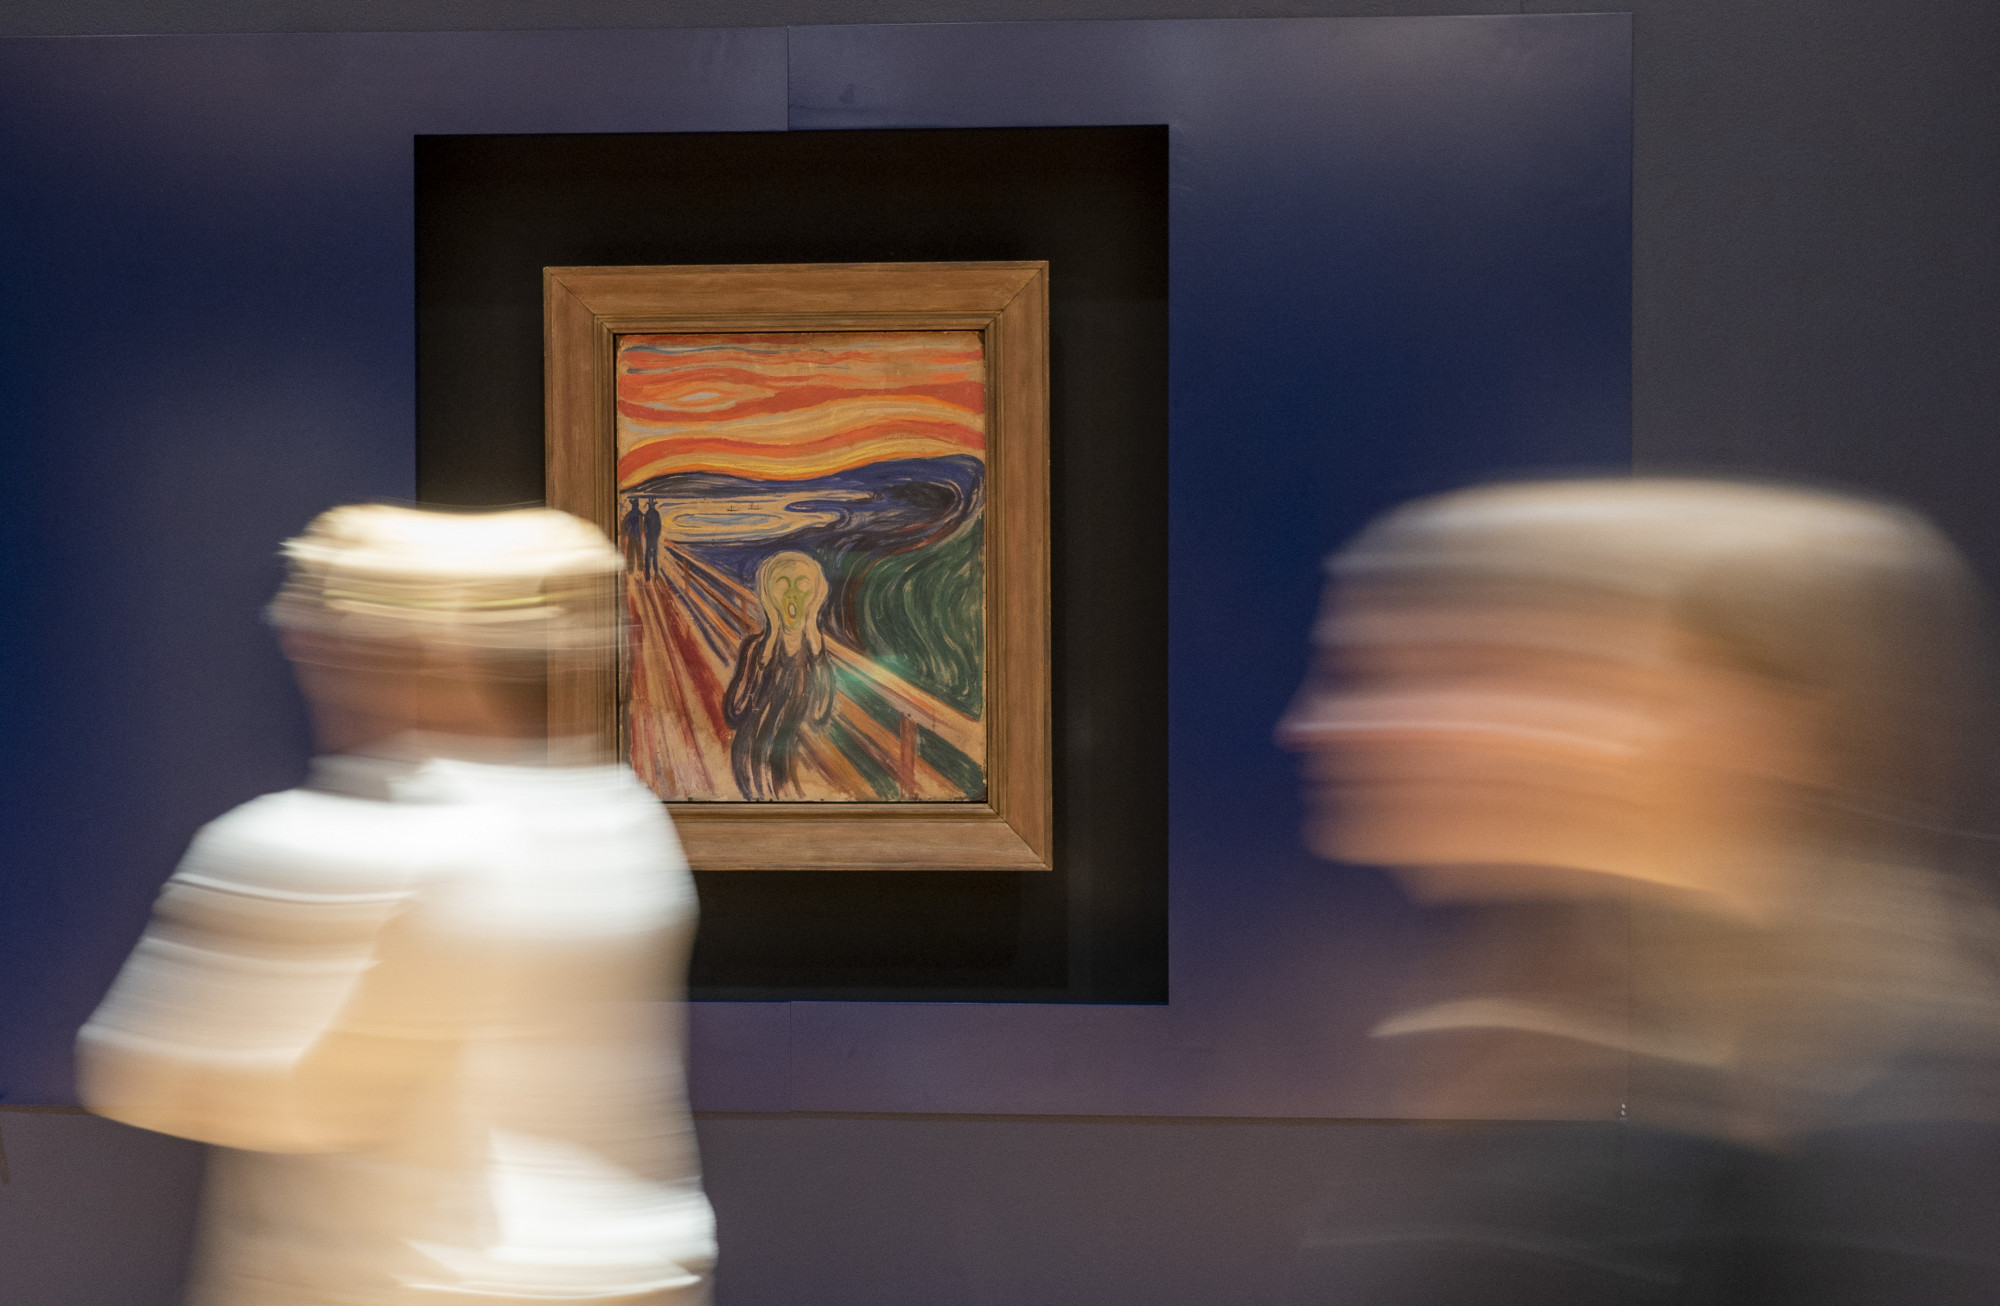 Klímaaktivisták Munch Sikolyához akarták ragasztani magukat, de az őrök megakadályozták őket